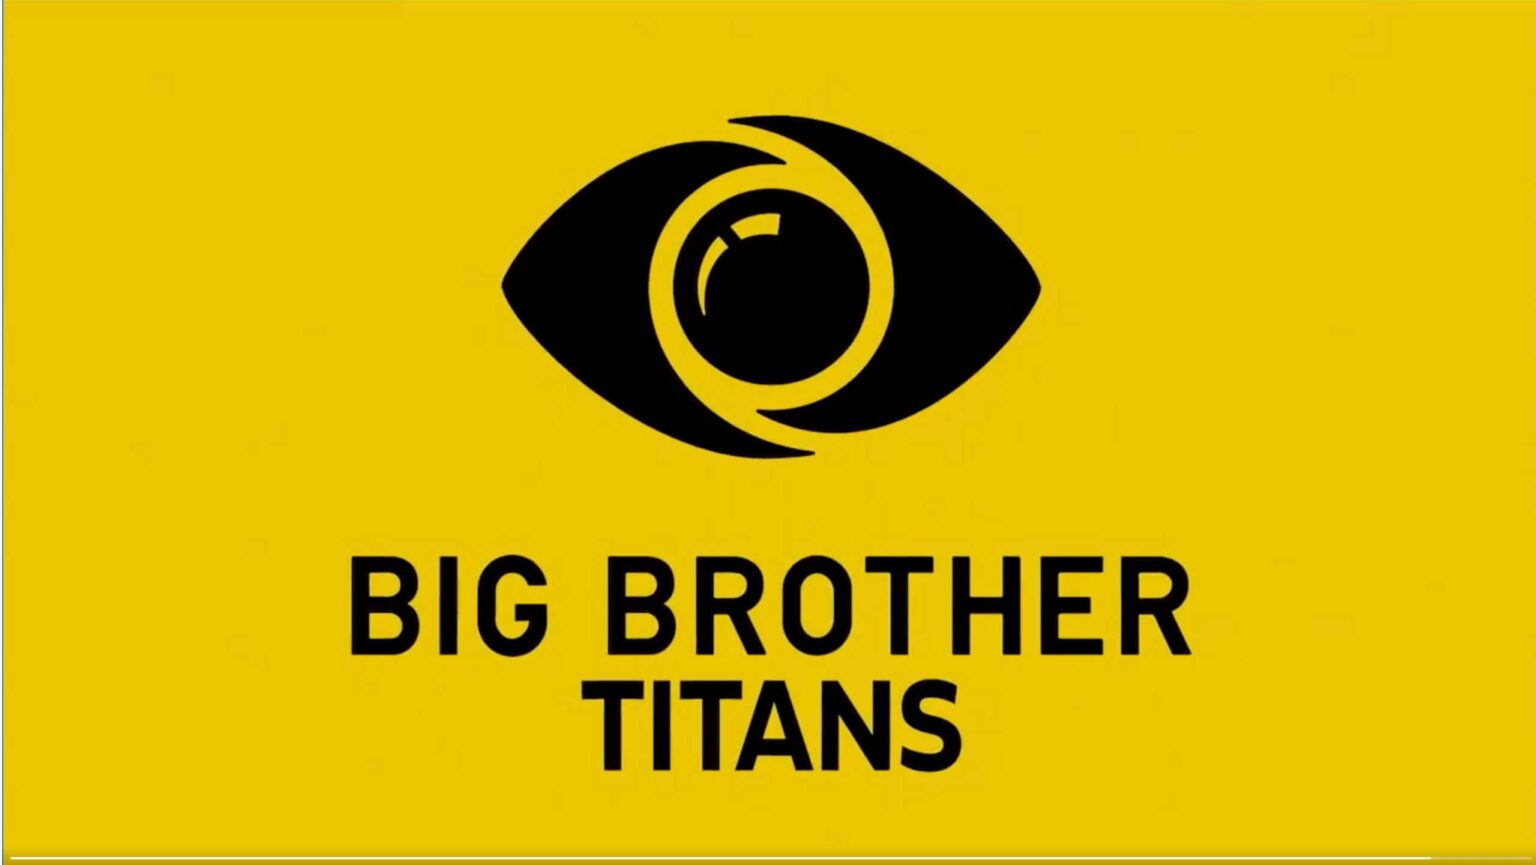 Big Brother Titans logo